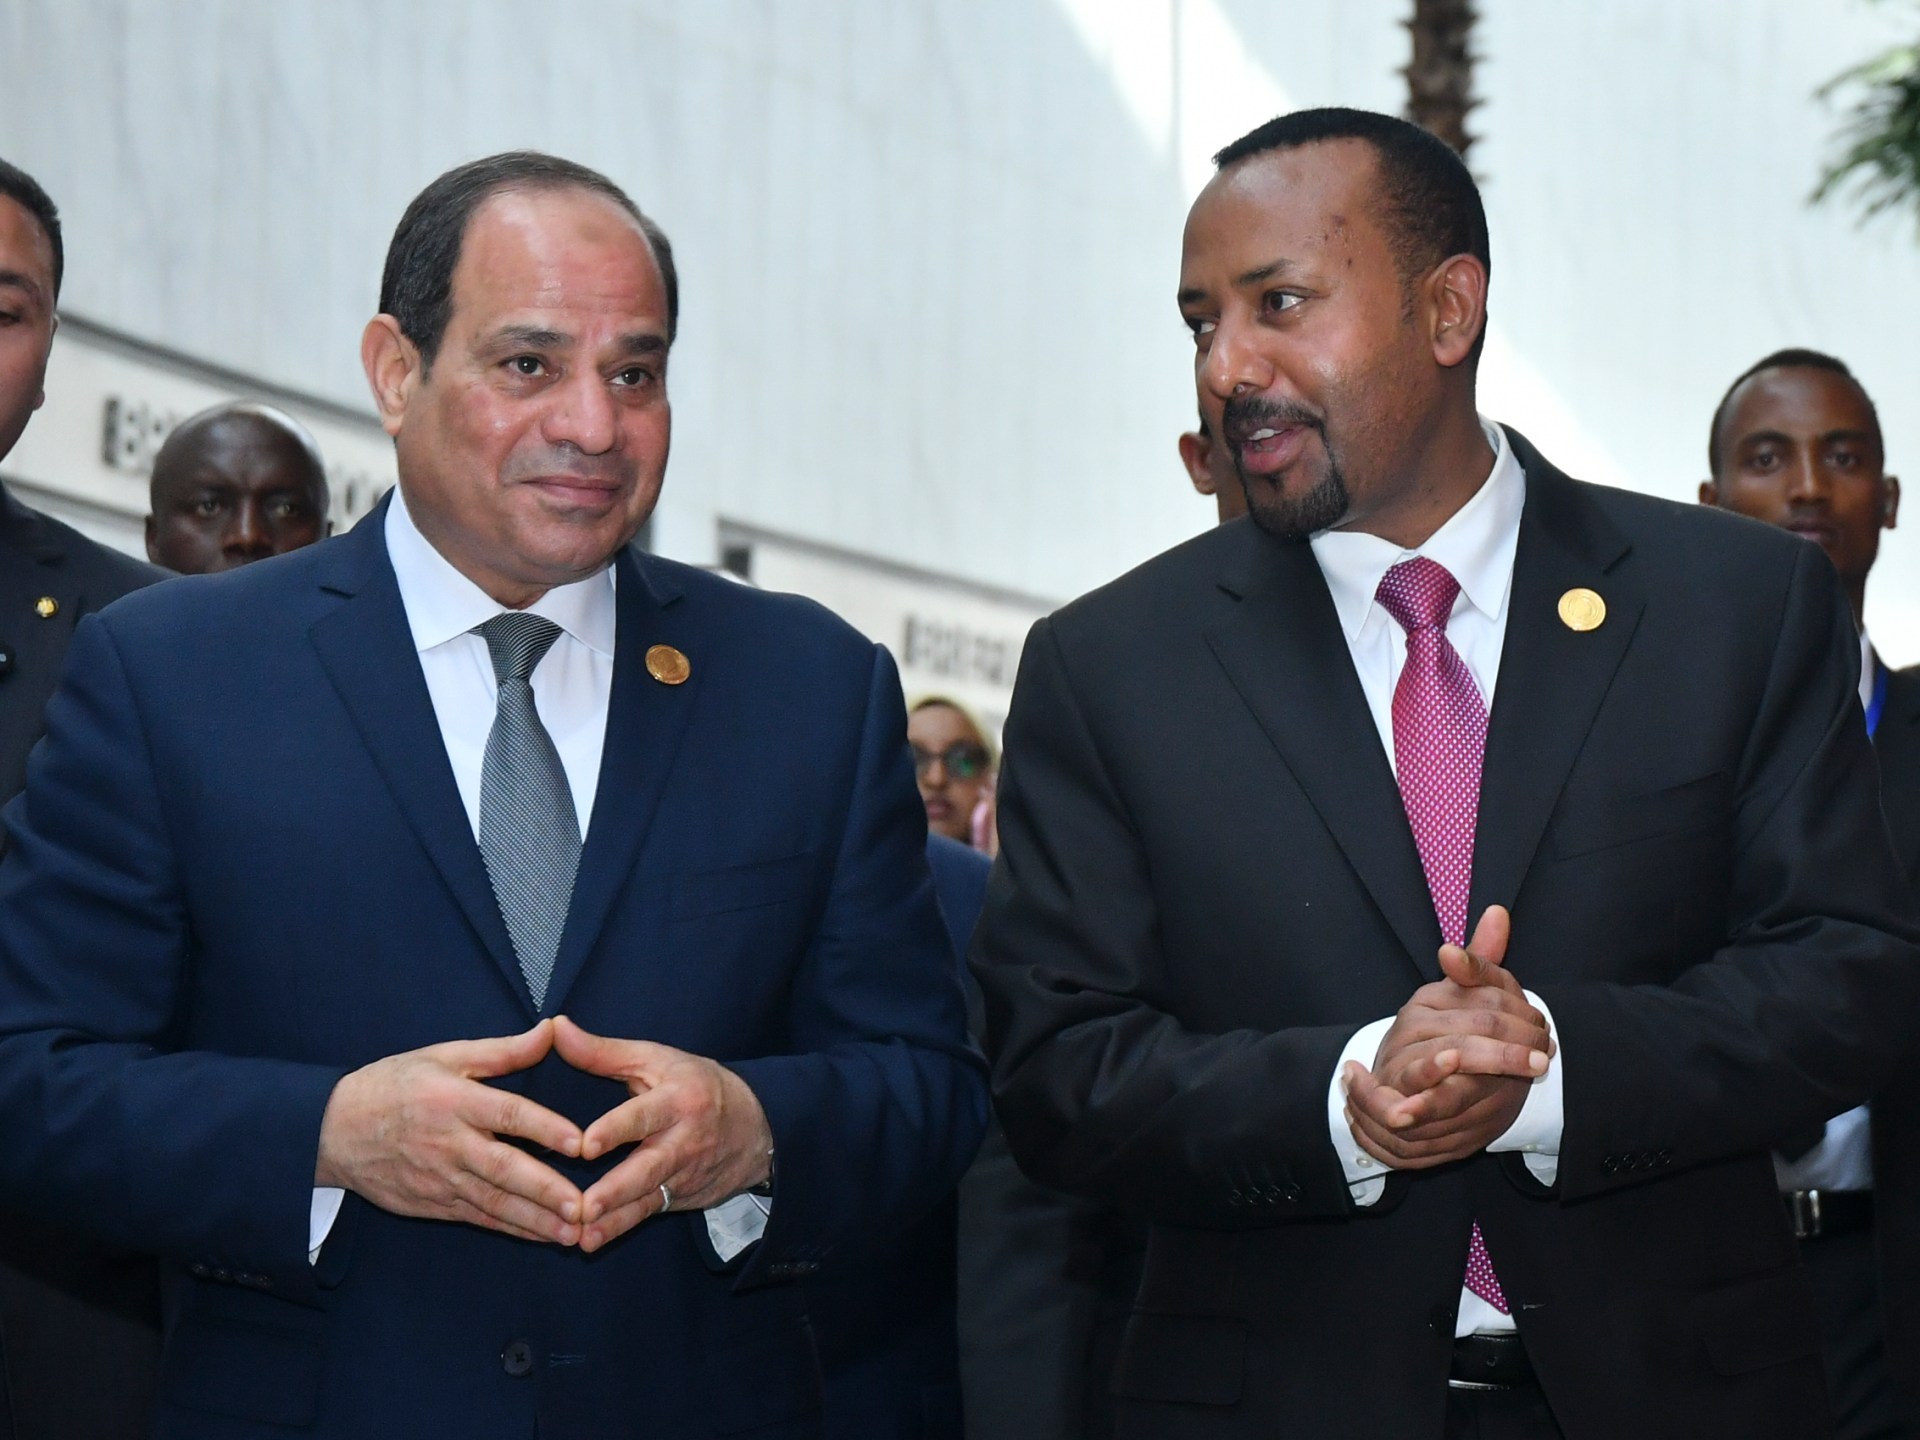 مصر وإمكانية تطويق إثيوبيا في القرن الأفريقي | آراء – البوكس نيوز